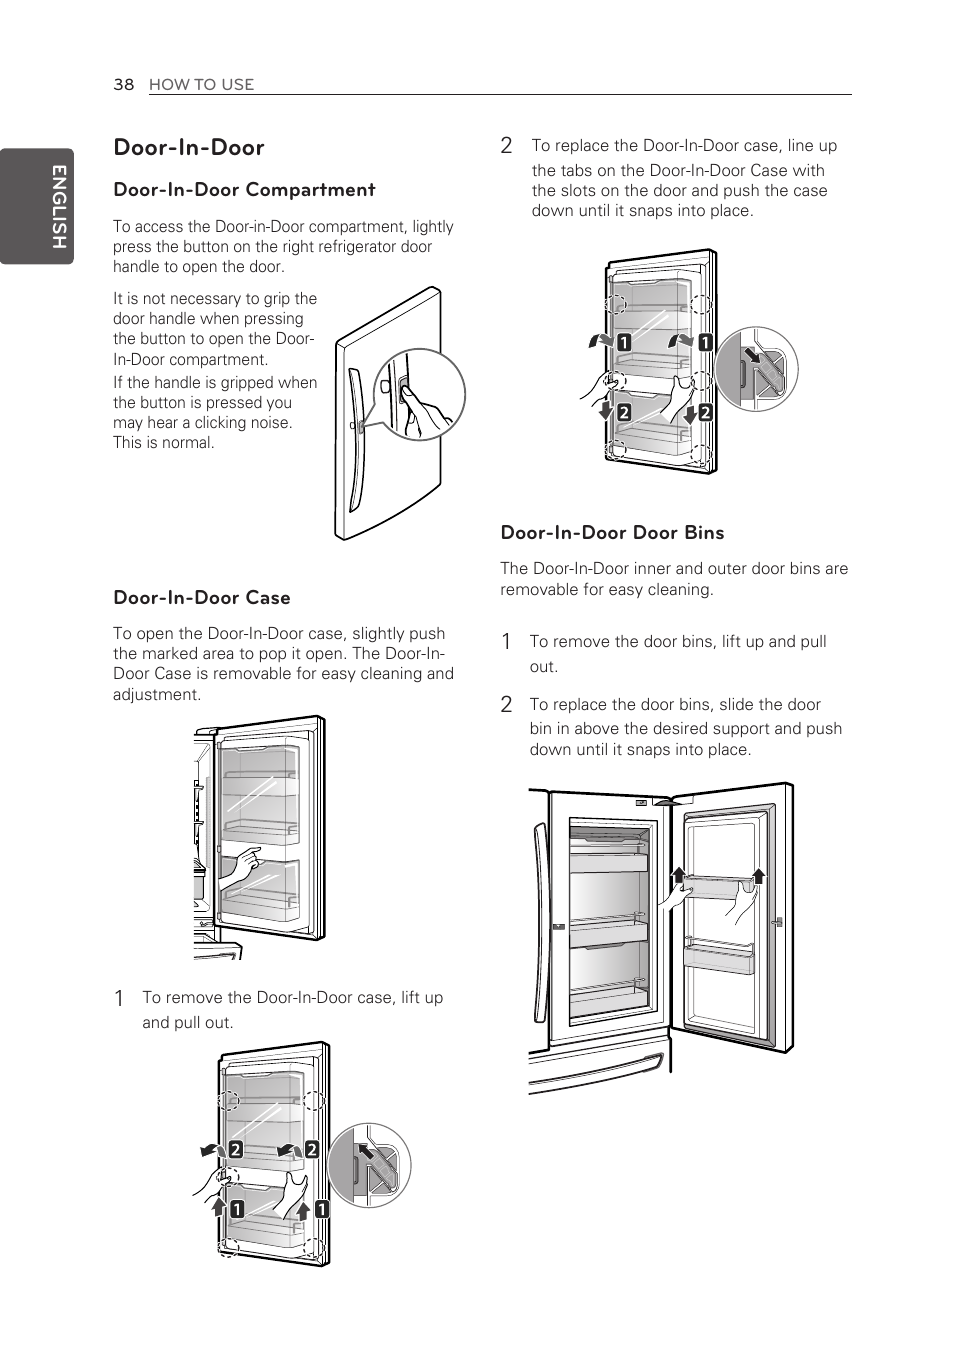 Door-in-door | LG LMXS30776S User Manual | Page 38 / 61